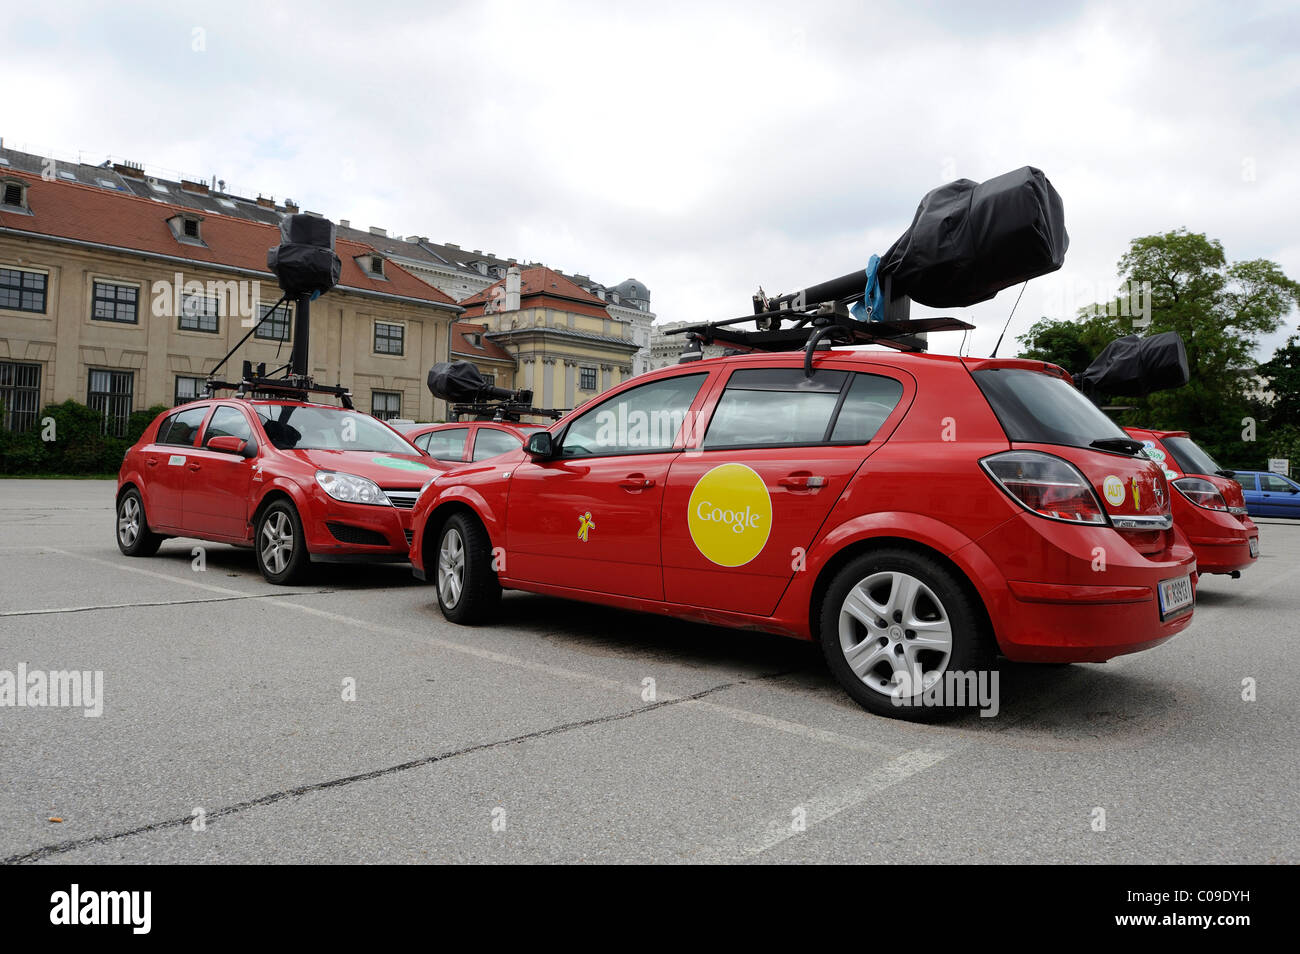 Google Street View i veicoli con telecamere speciali su standby in un parcheggio sito a Vienna, Austria, Europa Foto Stock